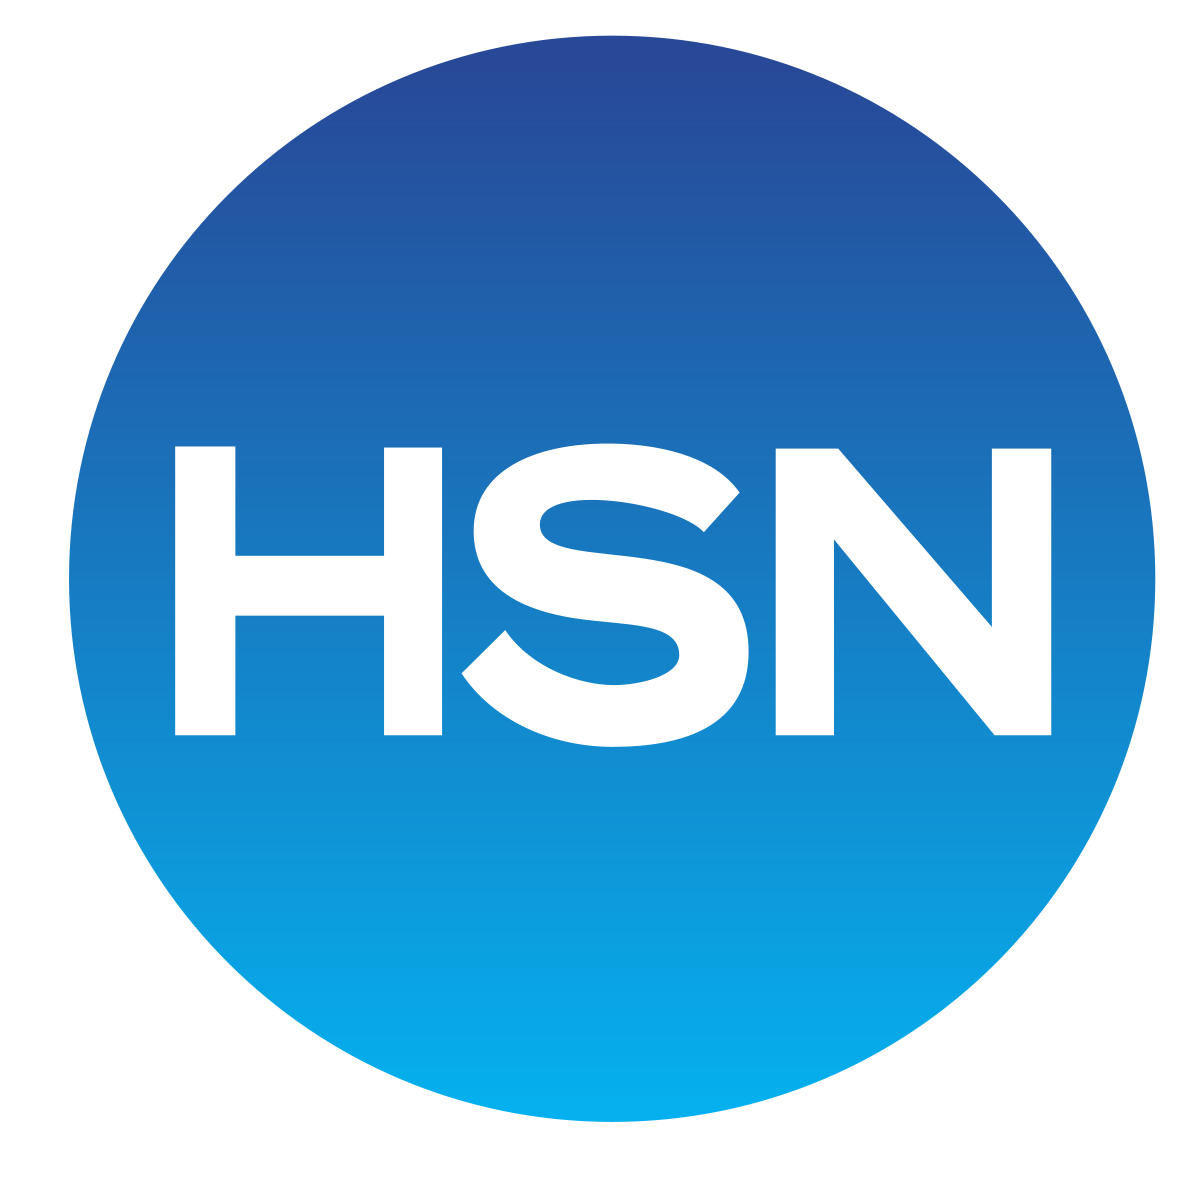 https://eglobalnv.com/wp-content/uploads/2020/06/1200px-HSN_logo.svg.png